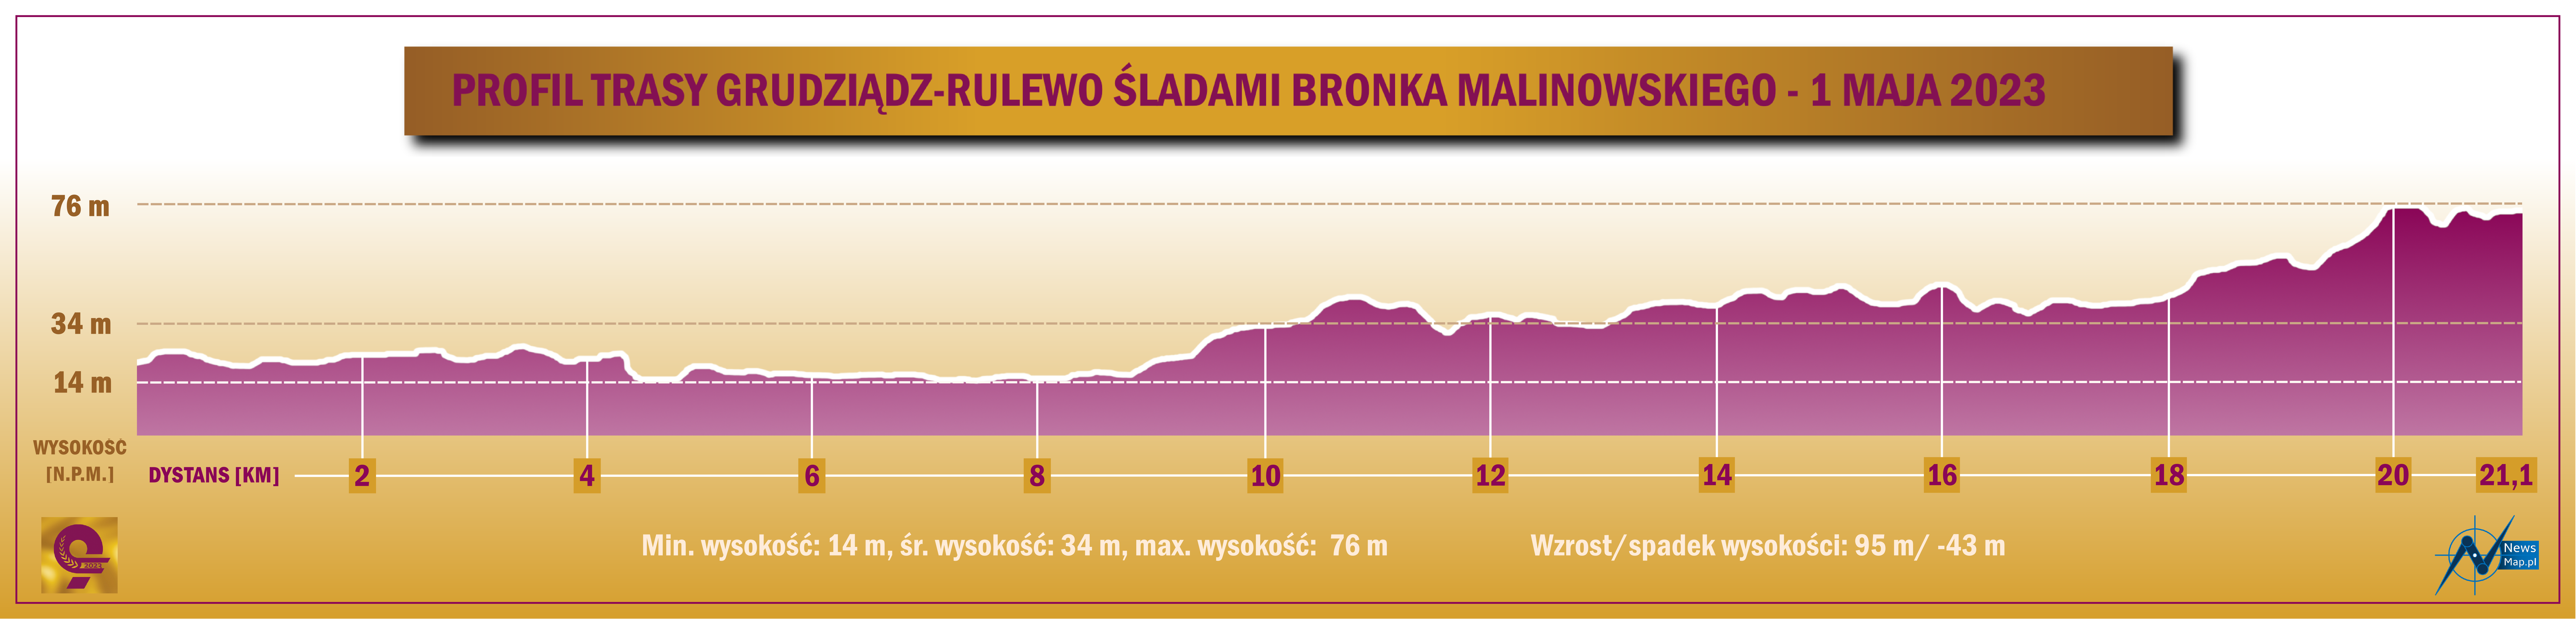 Półmaraton Grudziądz-Rulewo 2023 - profil topograficzny